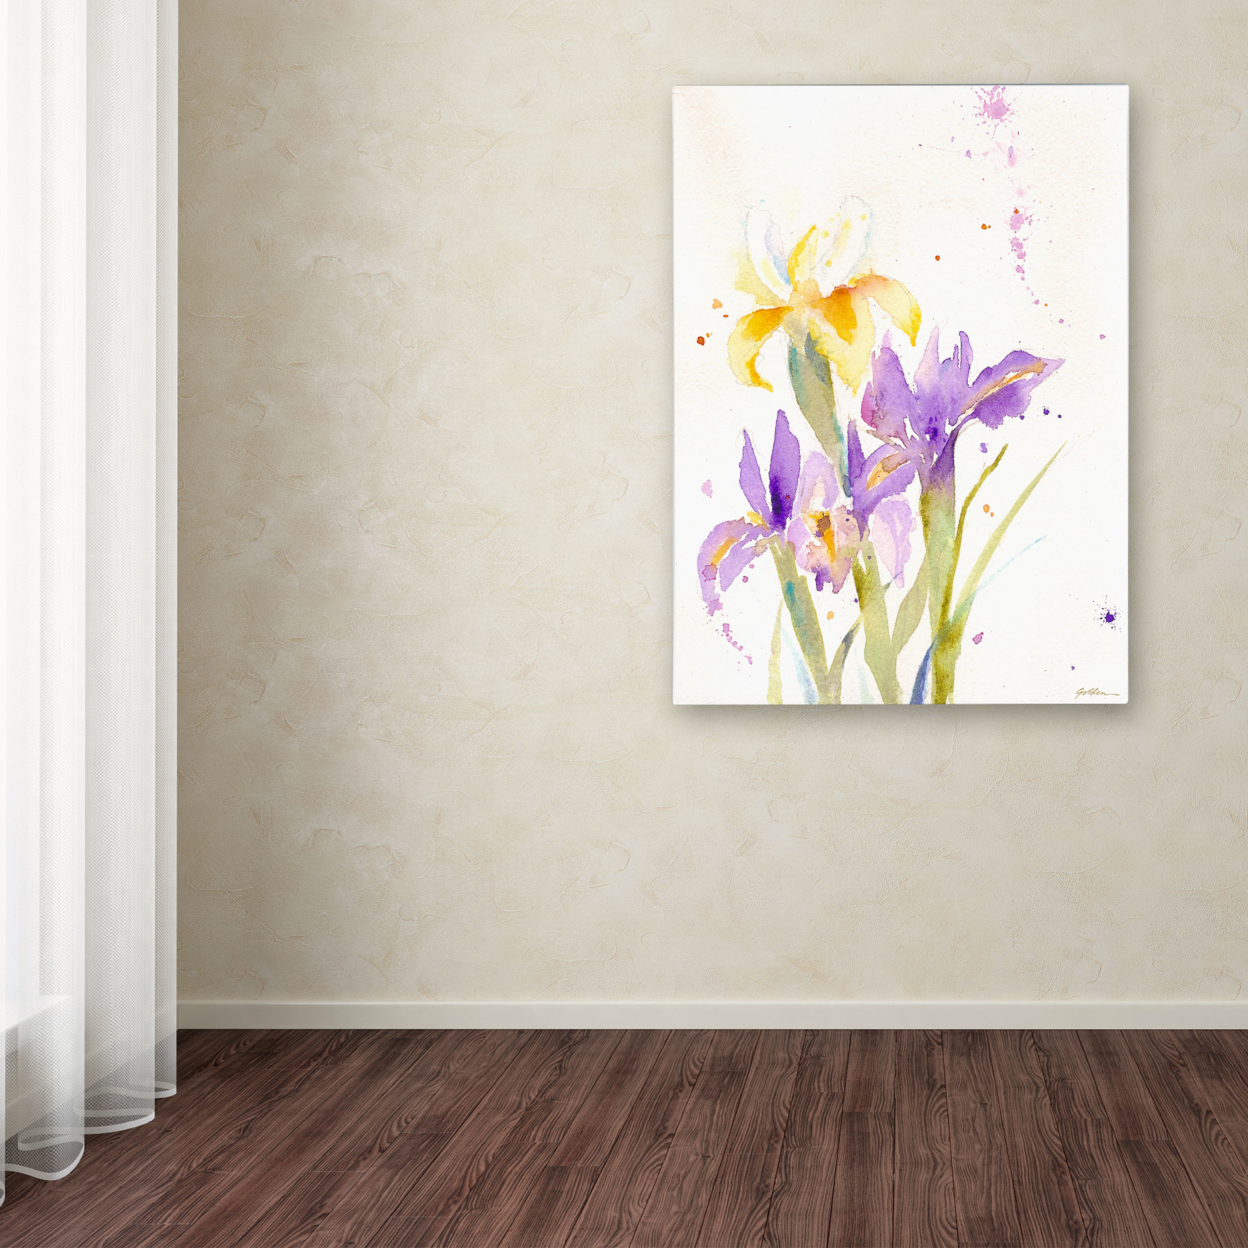 Sheila Golden 'The Golden Iris' Canvas Wall Art 35 X 47 Inches